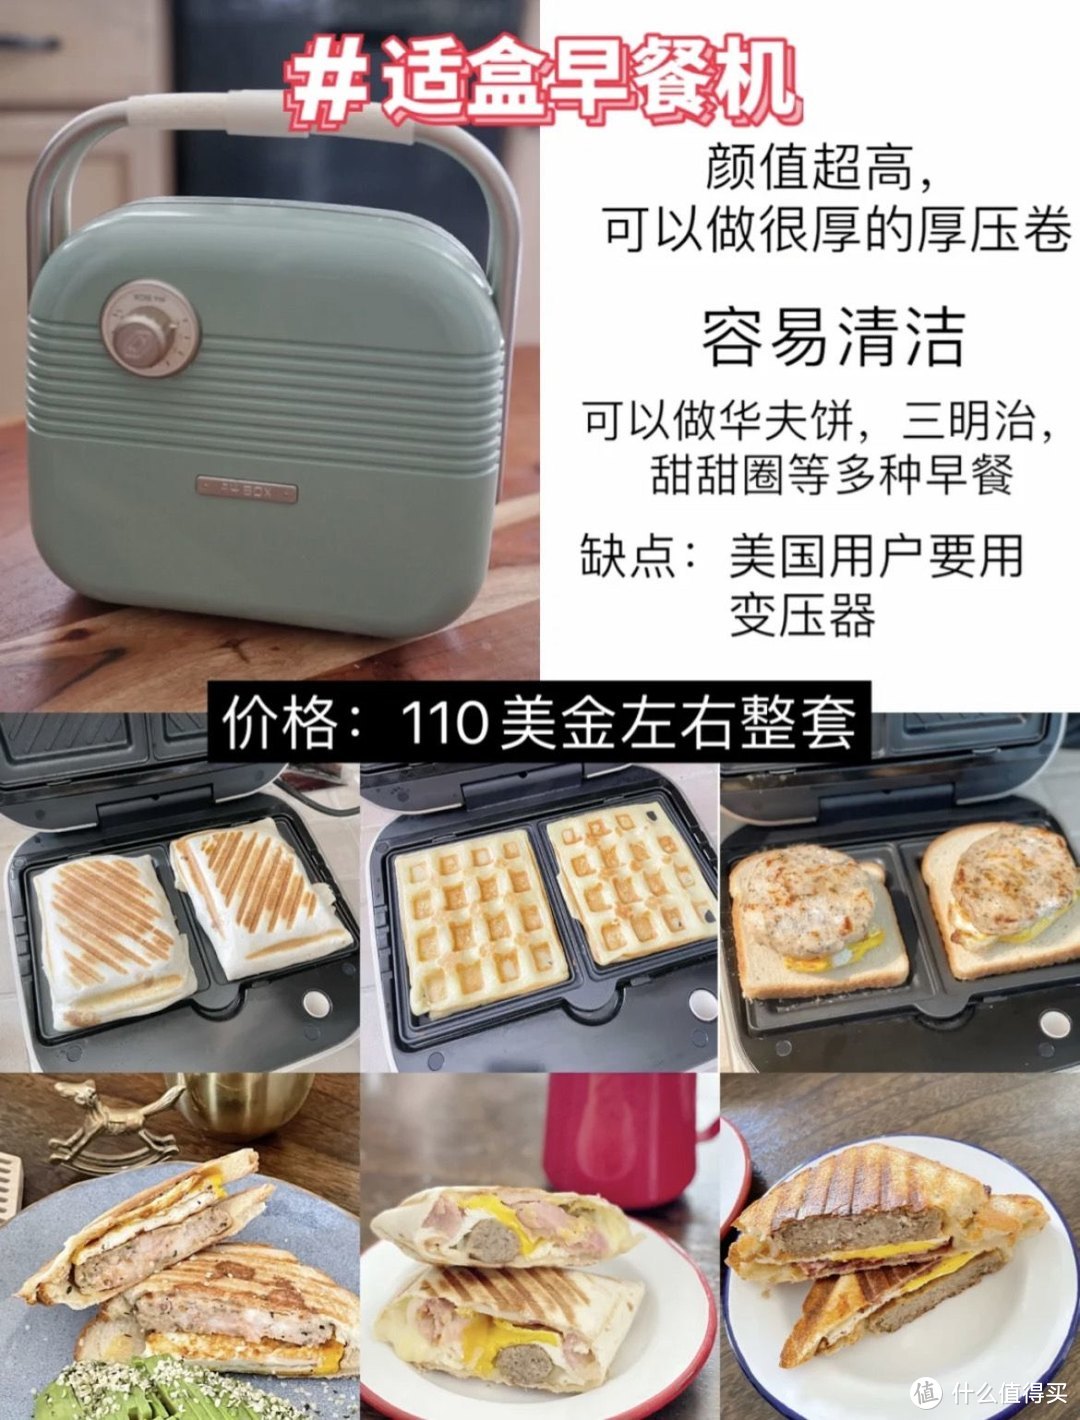 海外家庭怎么选购适合中国胃的小厨电?